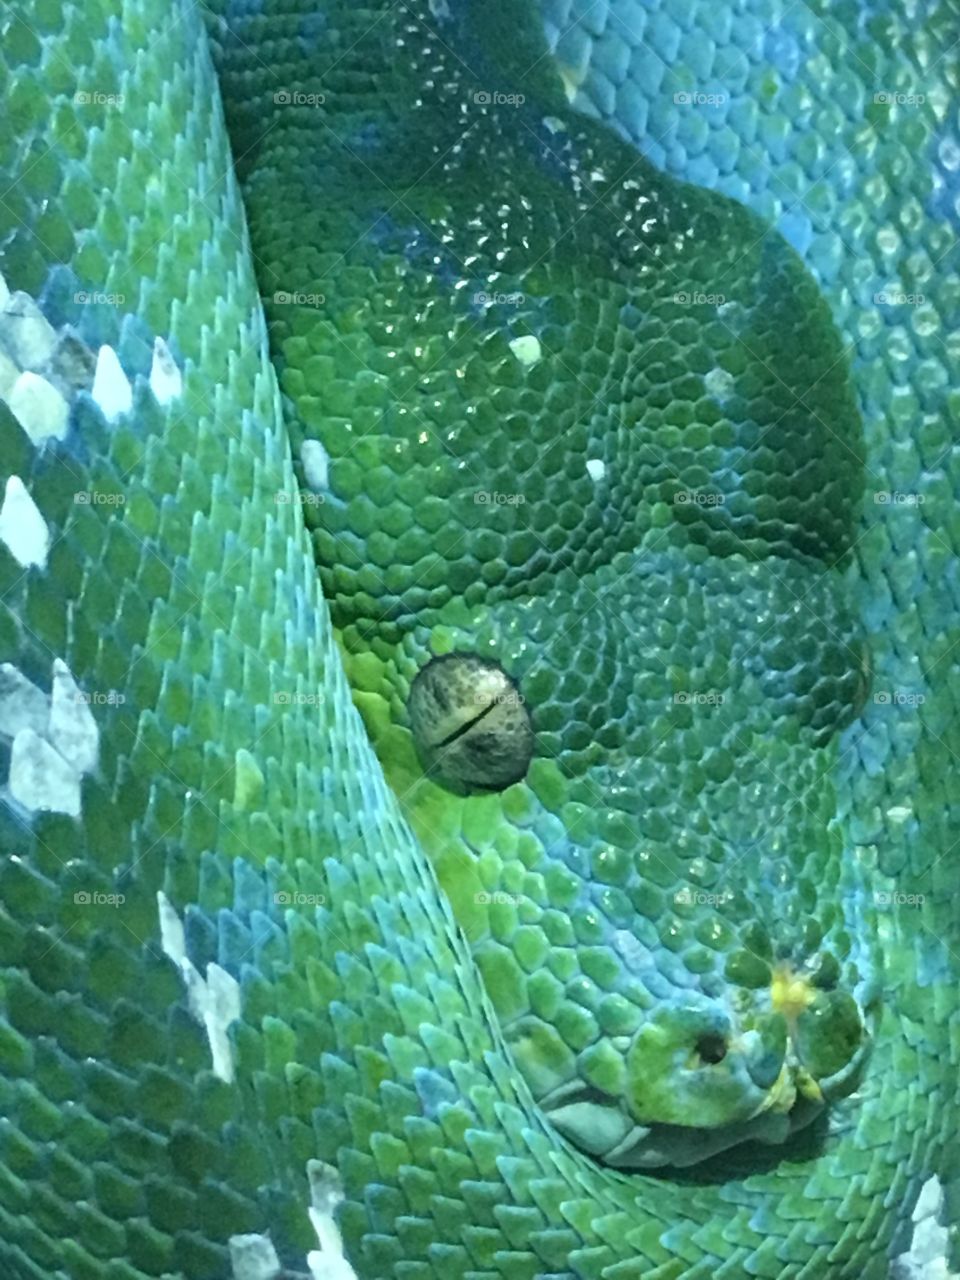 Boa snake 